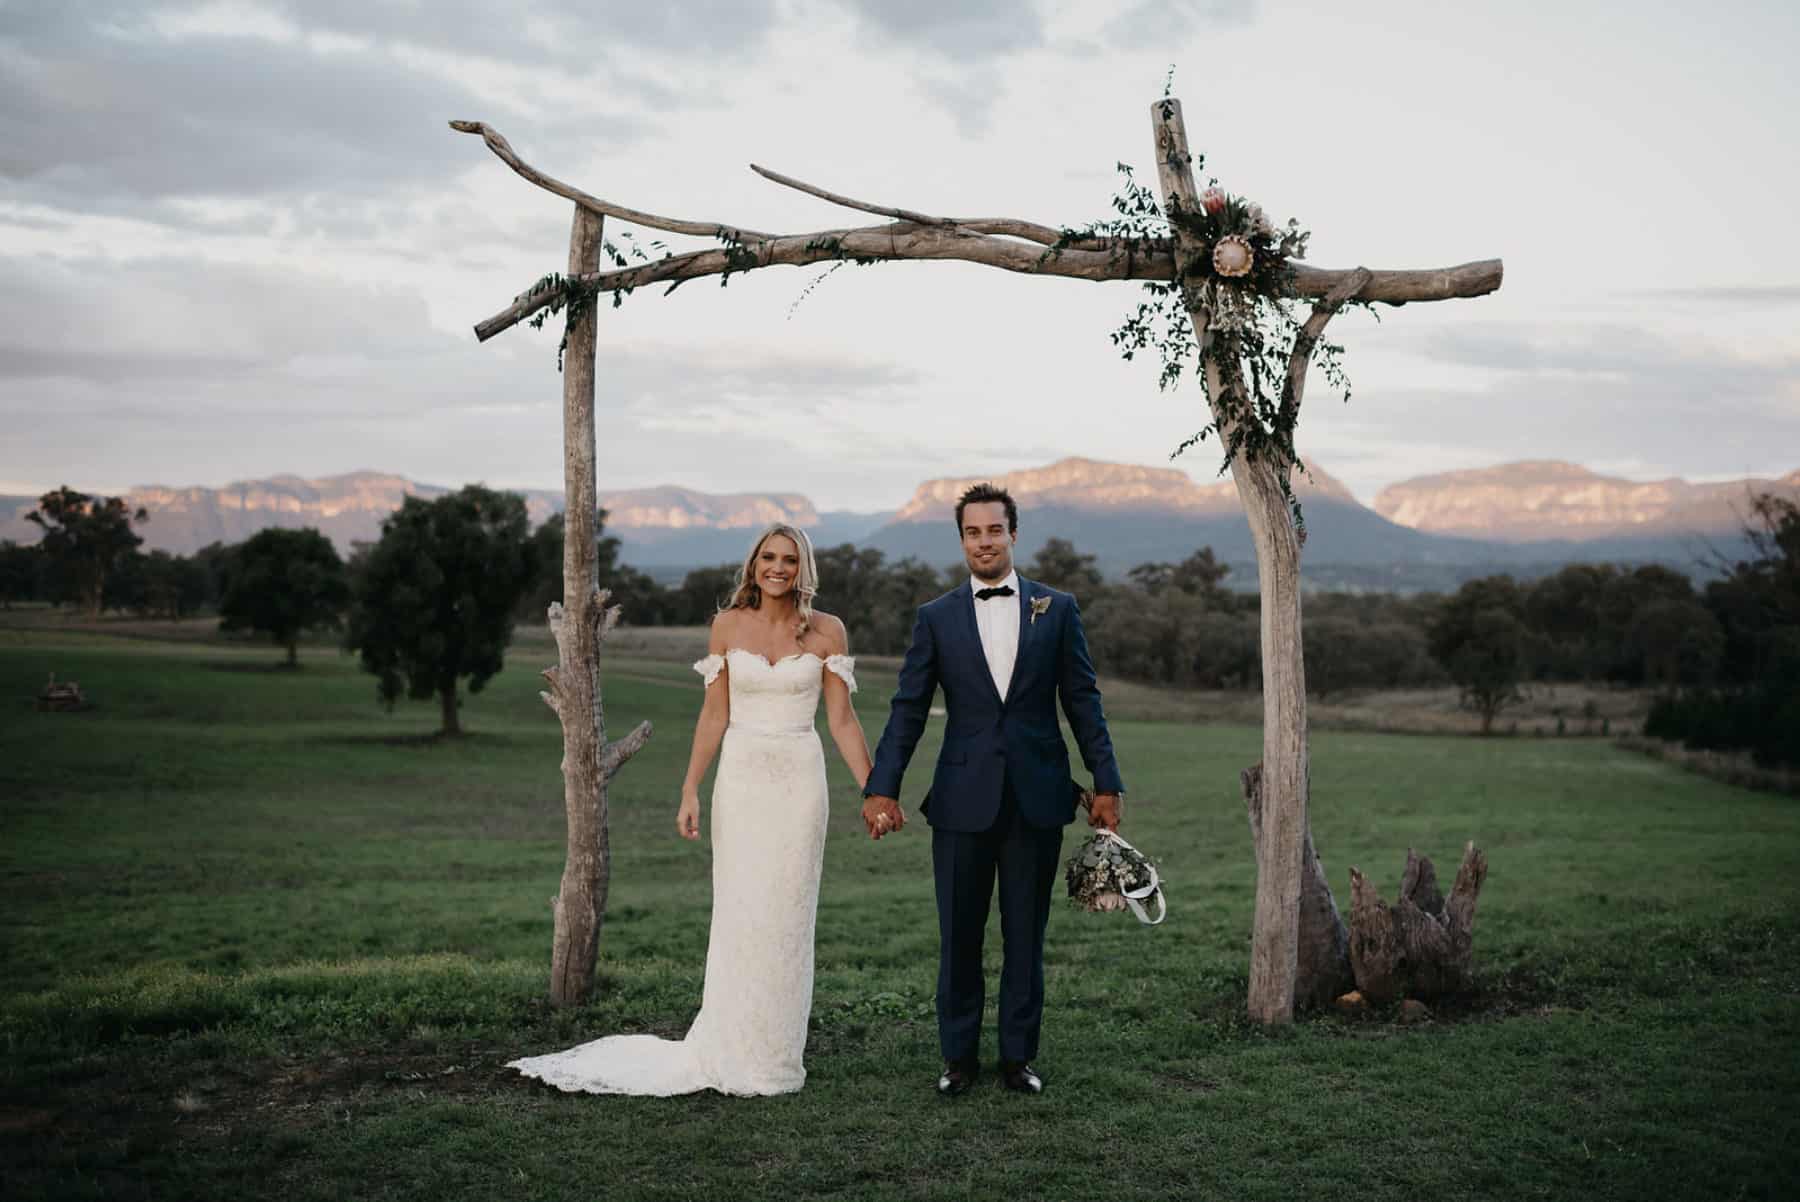 Top 10 weddings of 2017 | Kate & Blake’s Three Day Wed Fest